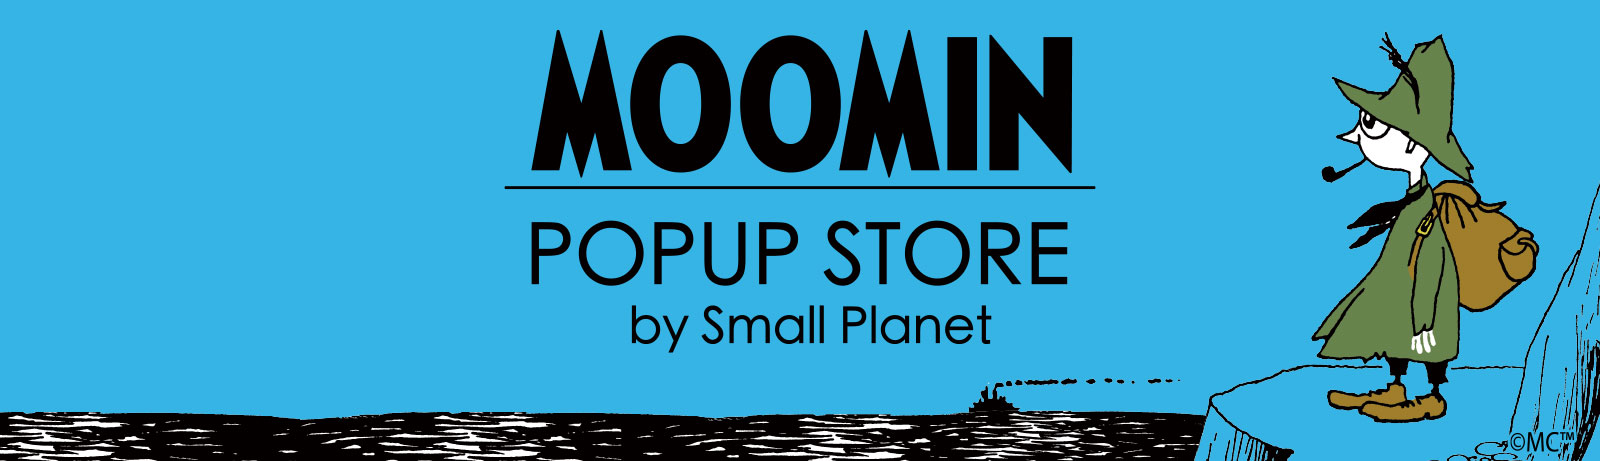 ムーミンの世界観を満喫できる期間限定ストア「MOOMIN POPUP STORE」順次オープン!